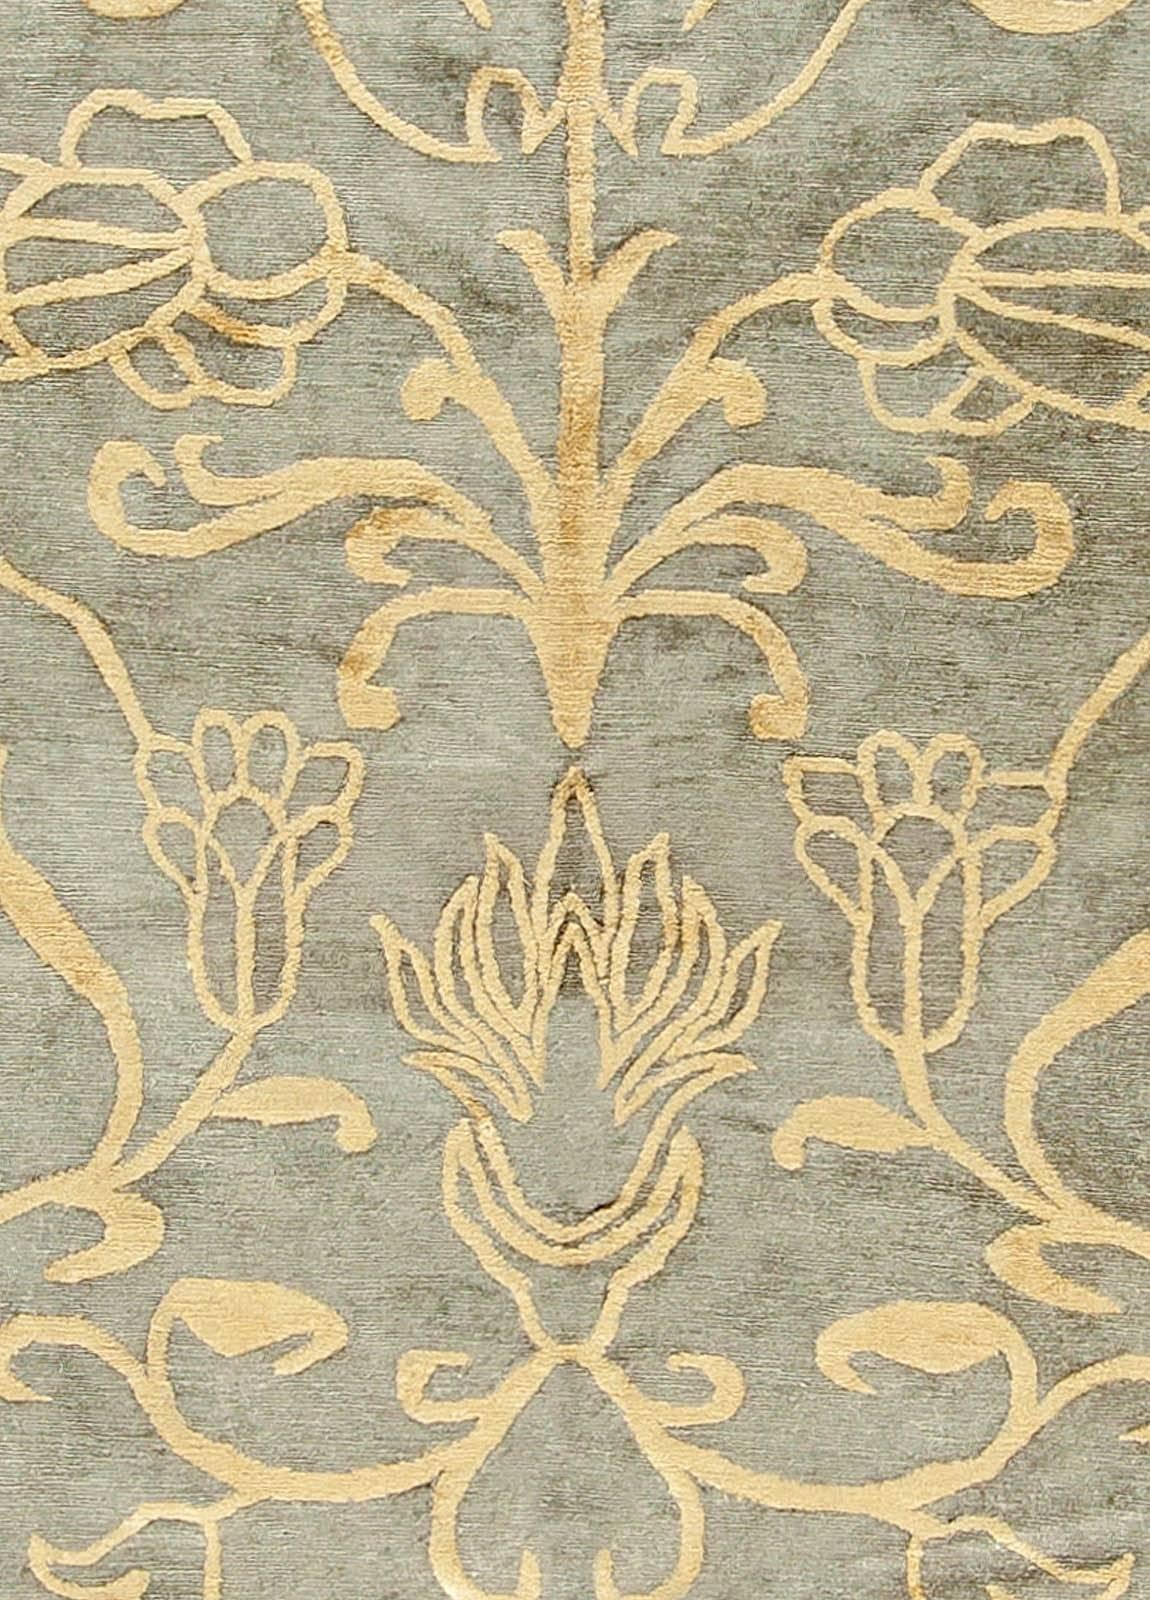 Tapis beige traditionnel d'inspiration européenne fait à la main par Doris Leslie Blau.
Dimensions : 353 × 678 cm (11'7